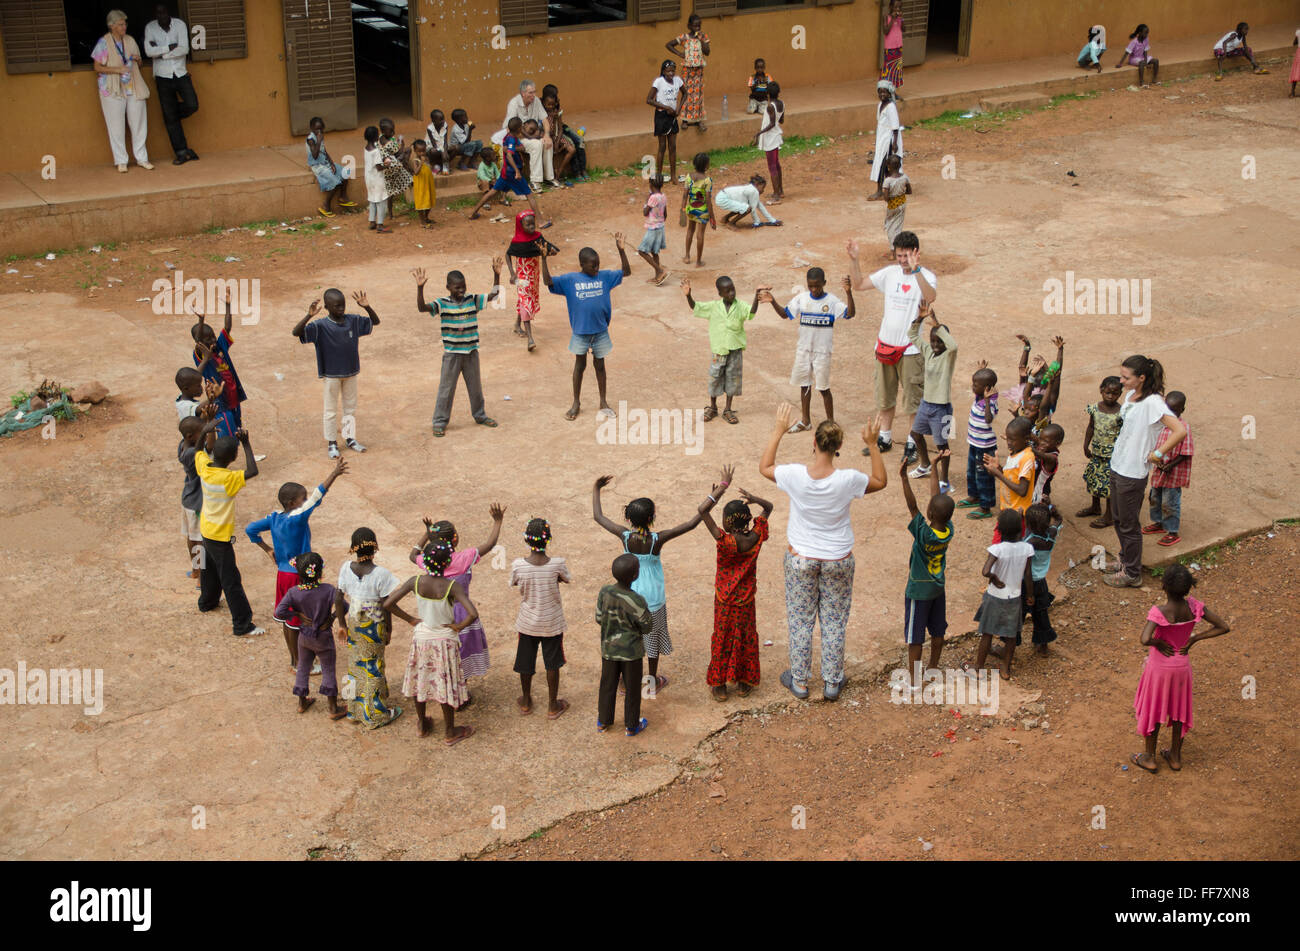 Mali, Afrique - Groupe d'enfants noirs s'amusant dans un cercle en Afrique Banque D'Images